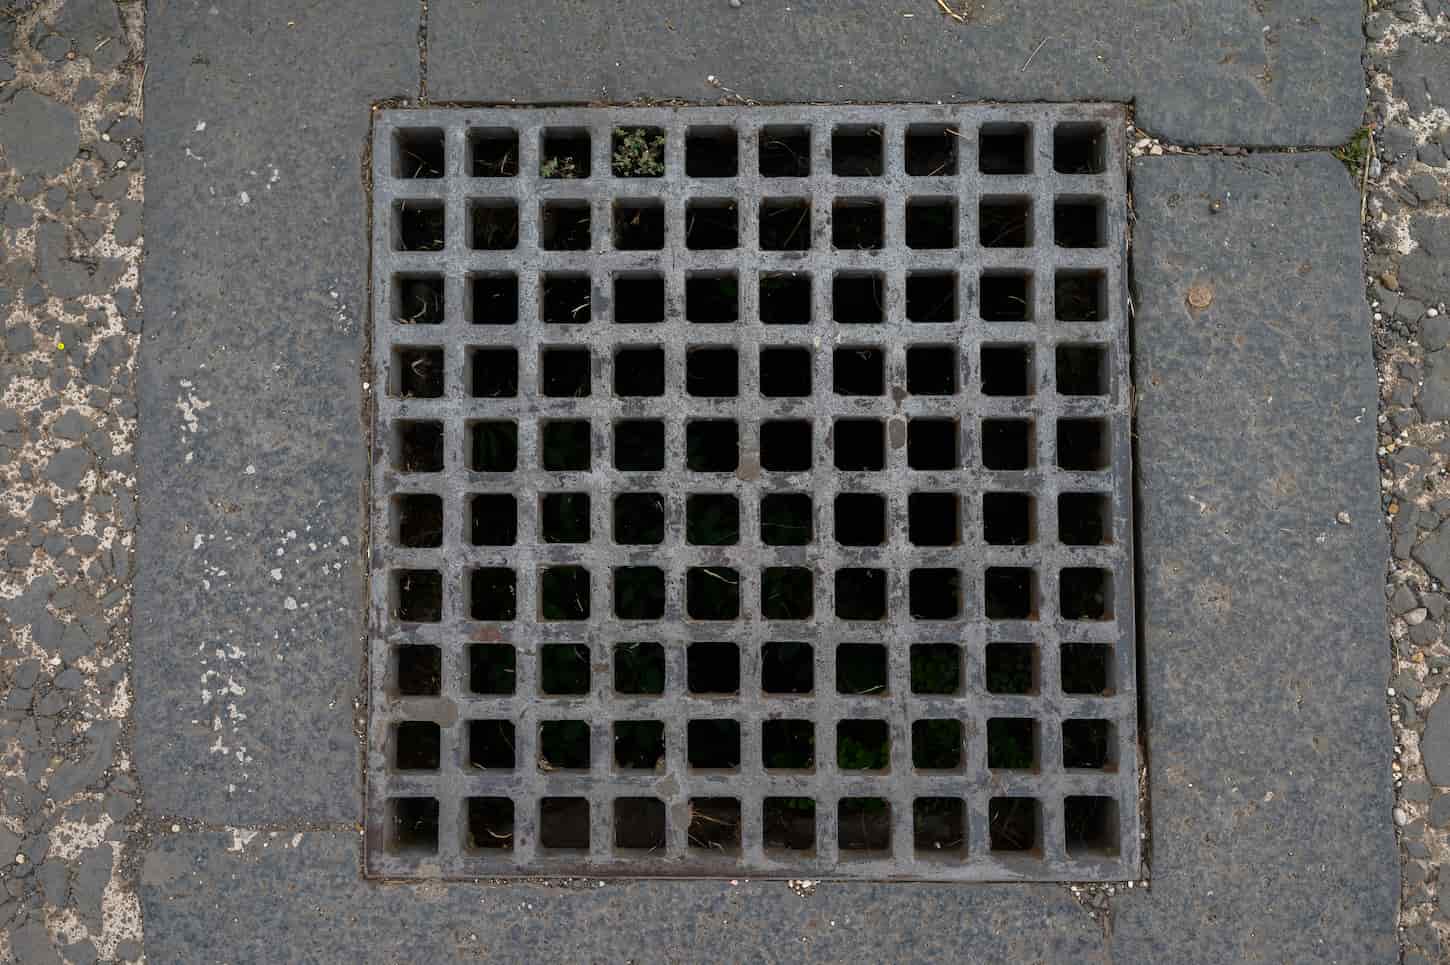 An image of a manhole.